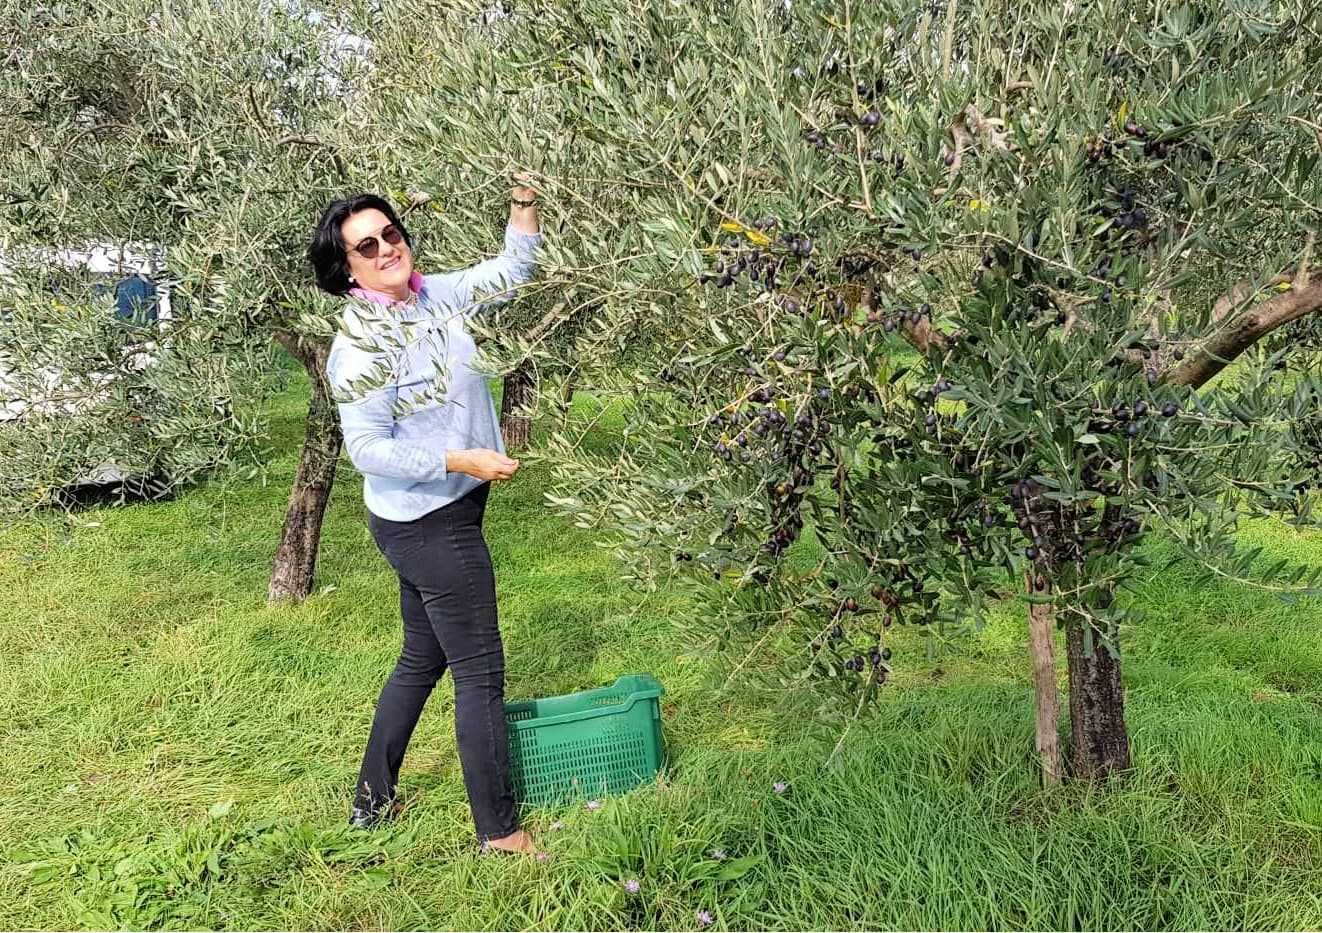 concours-des-meilleures-huiles-d-olive-europe-les-producteurs-croates-celebrent-87-victoires-au-concours-mondial-olive-oil-times